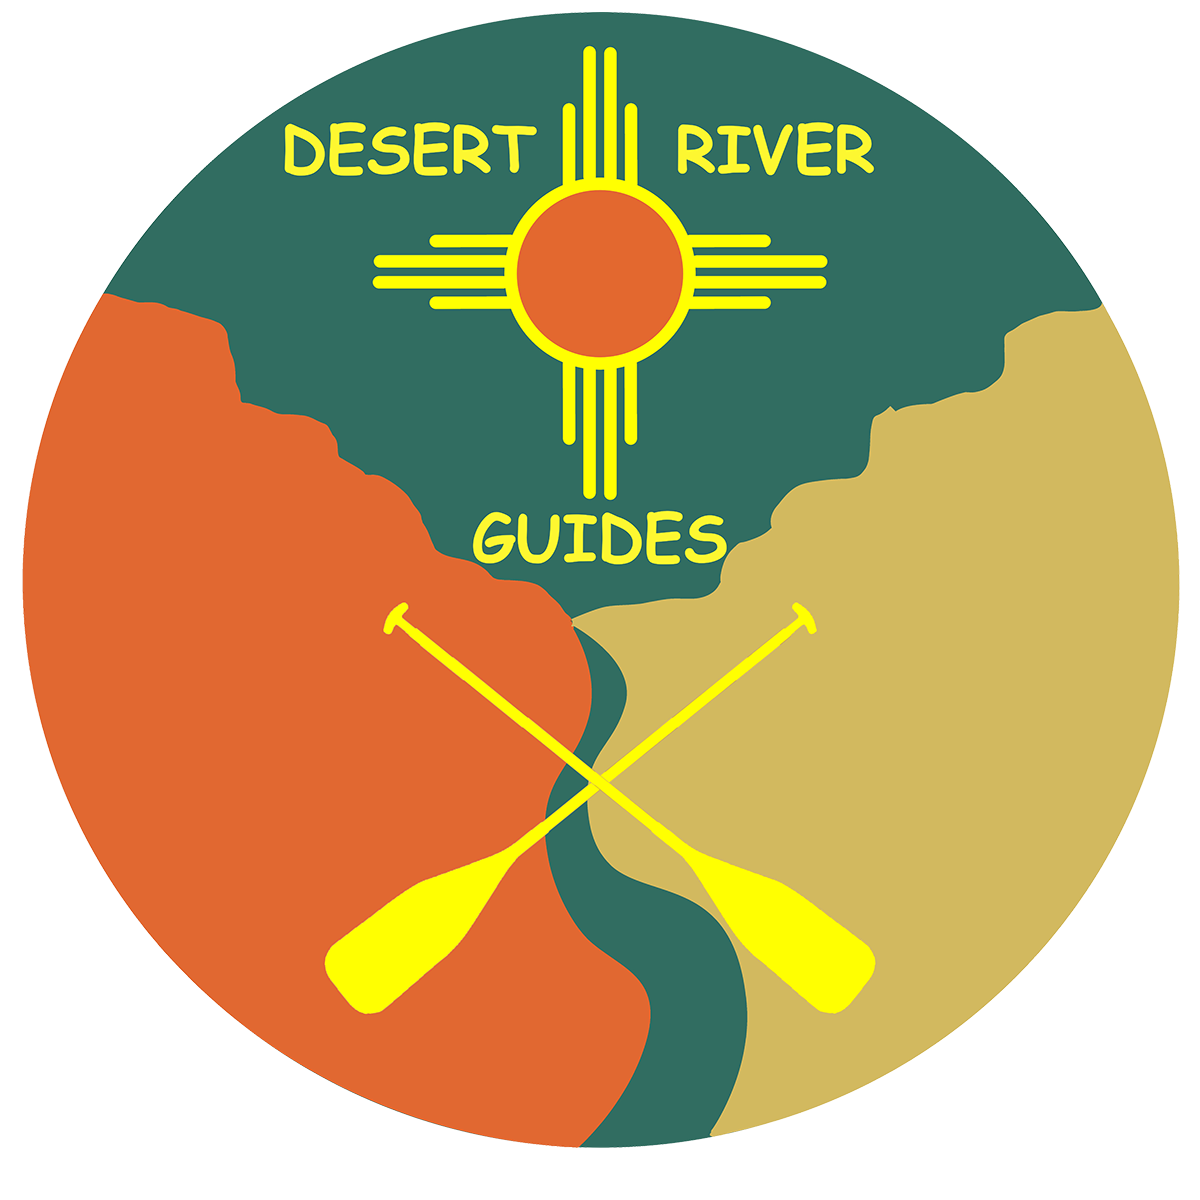 Desert River Guides